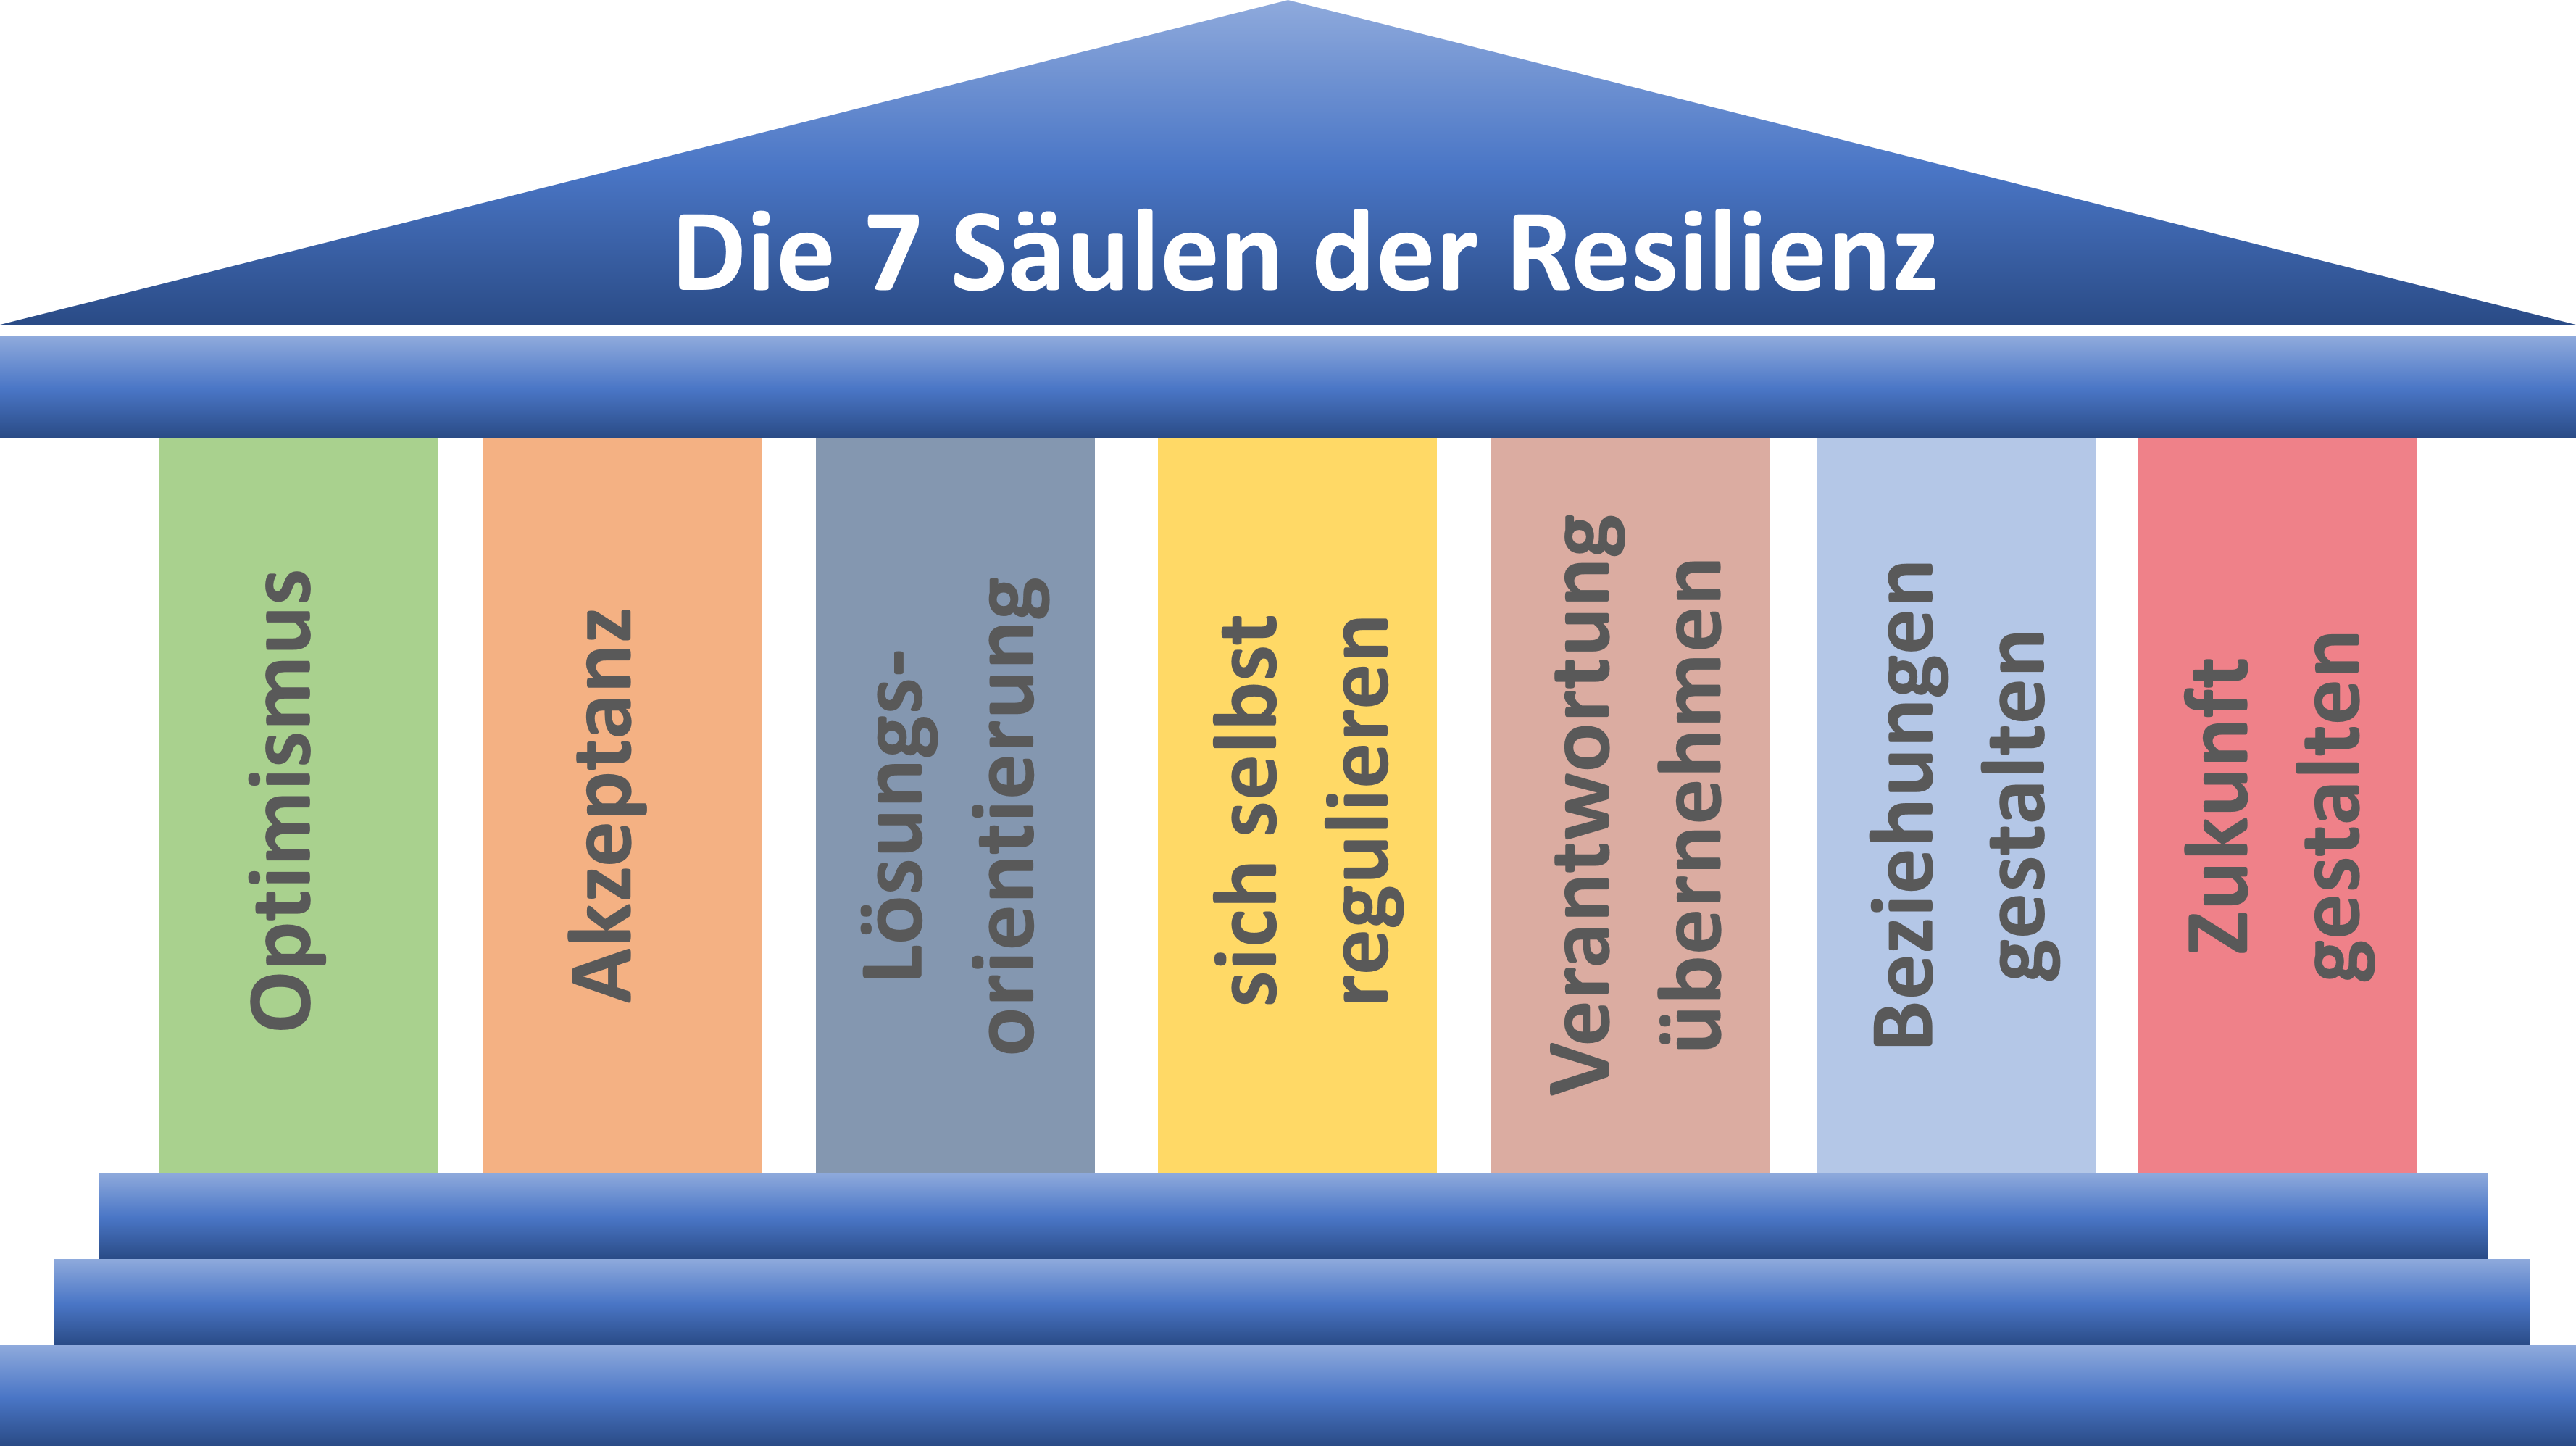 Die Säulen der Resilienz - Resilienzfaktoren